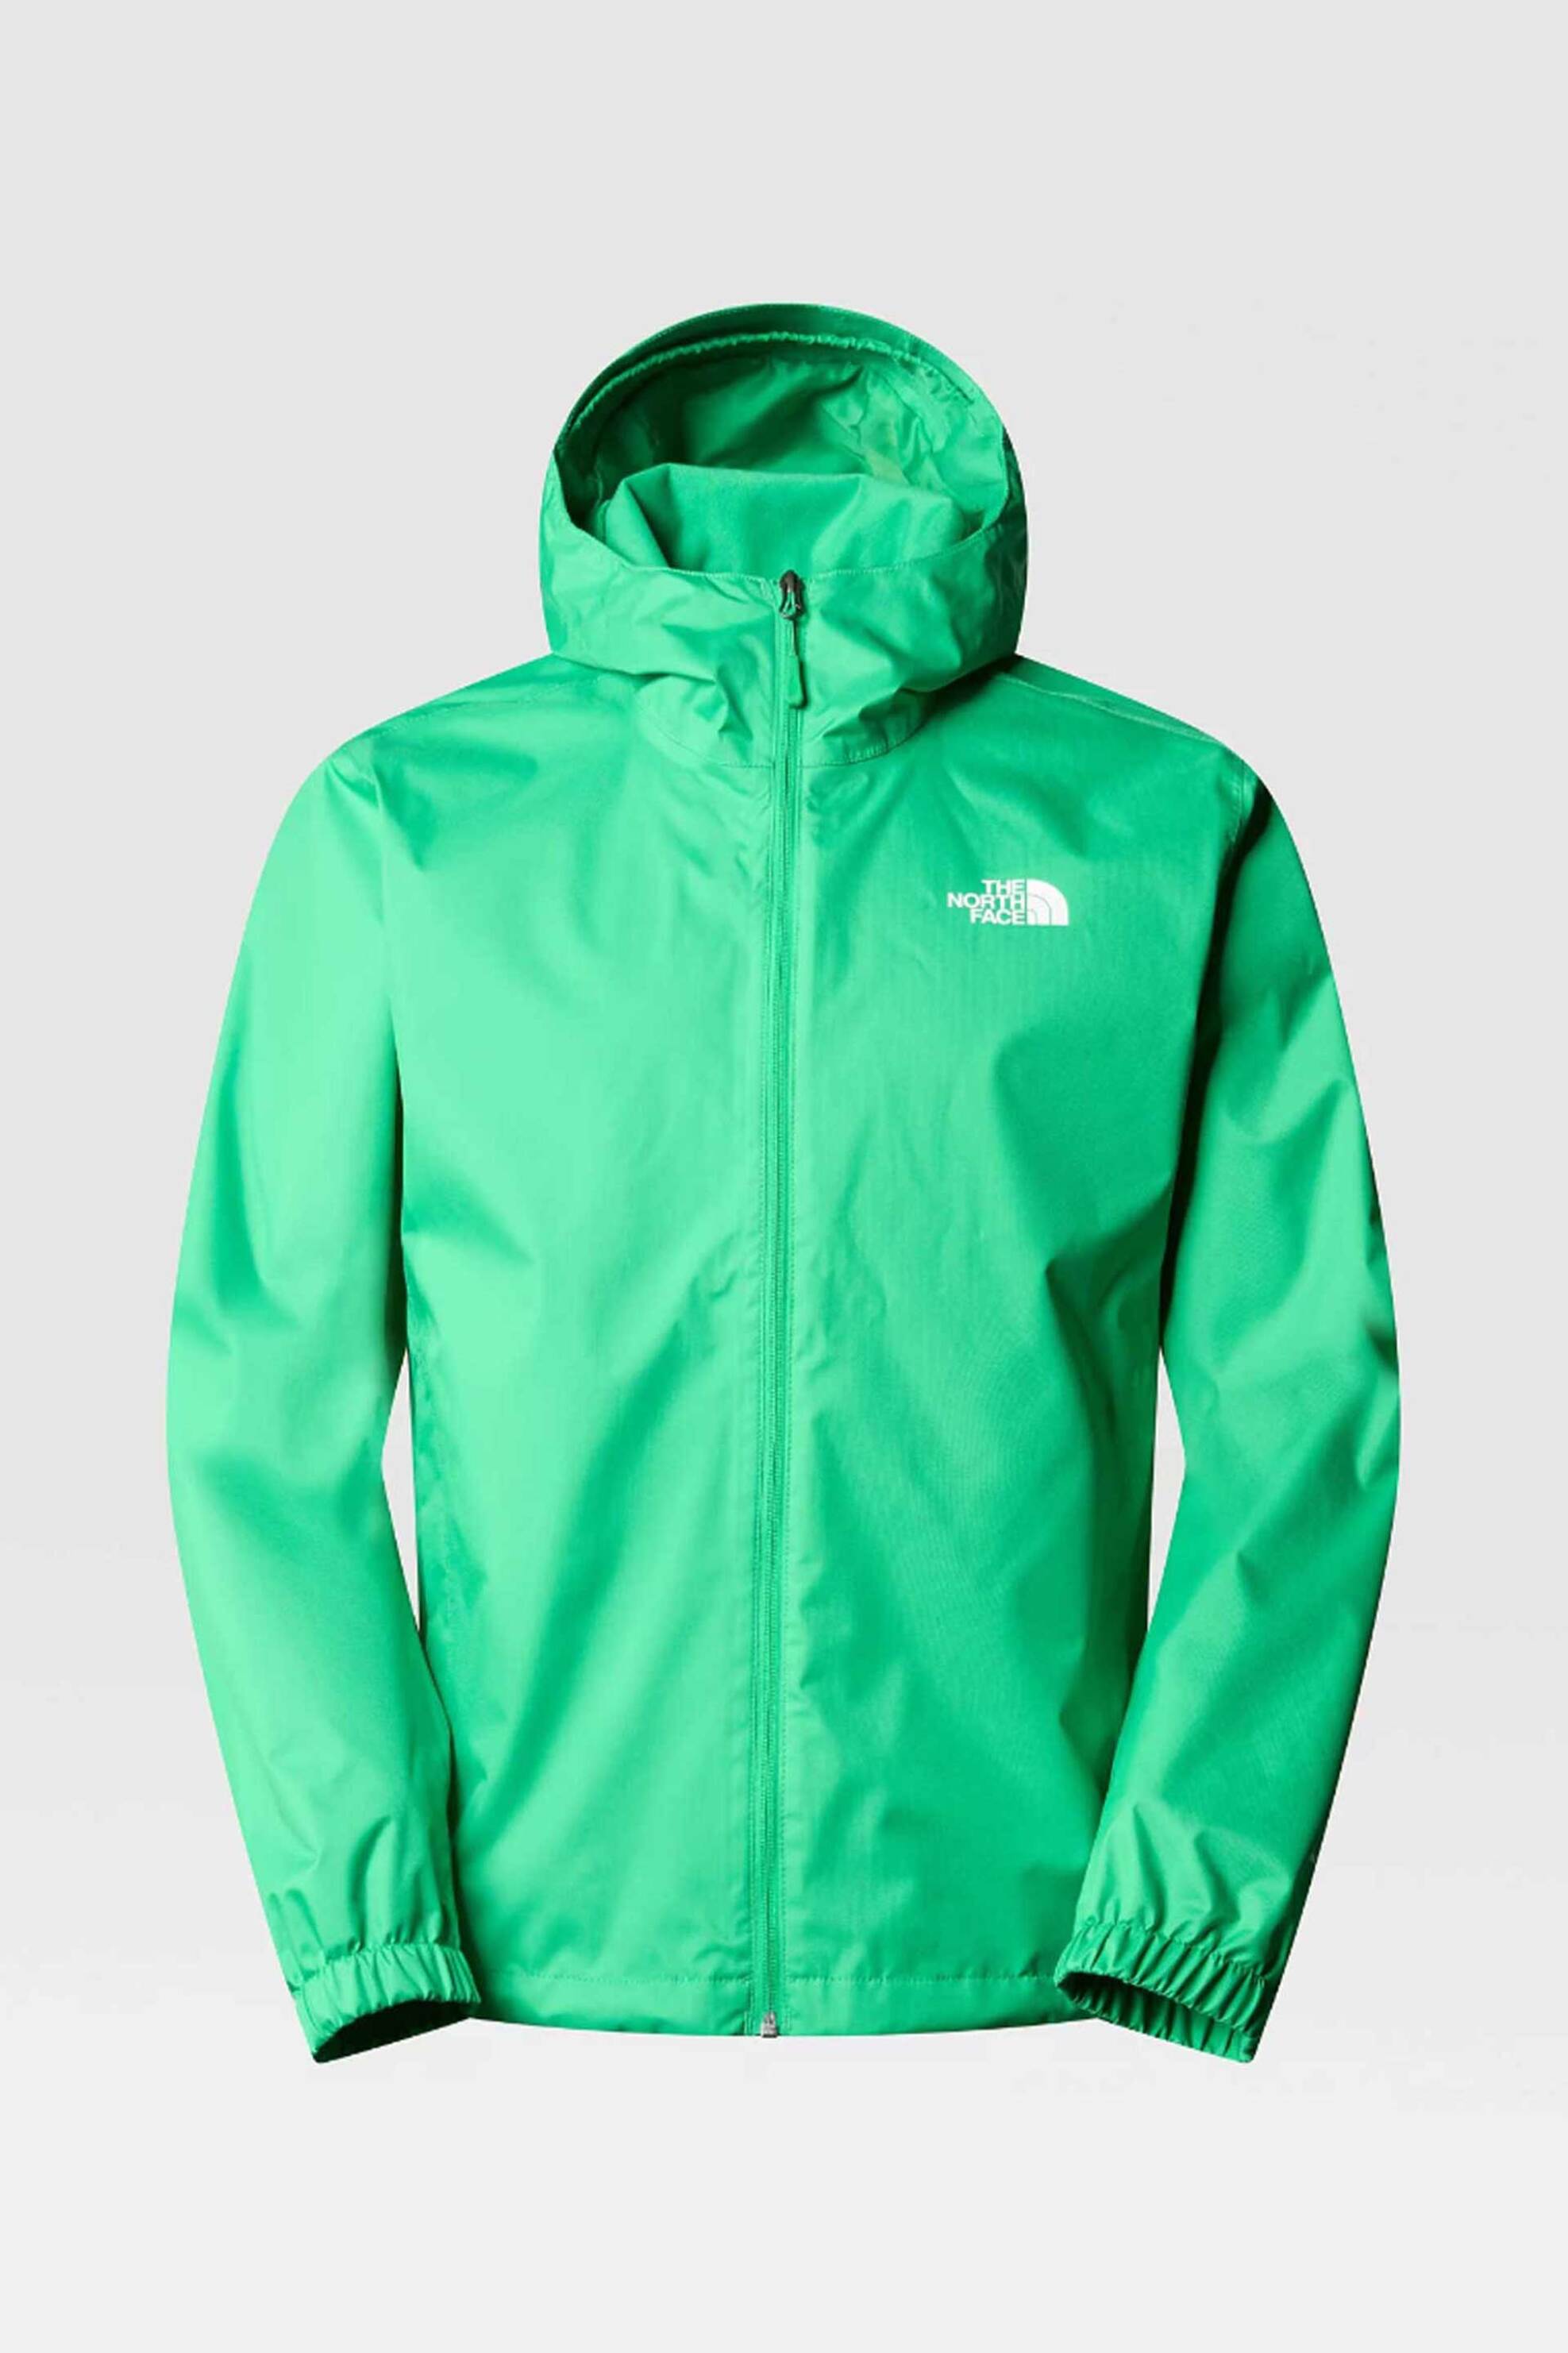 Ανδρική Μόδα > Ανδρικά Ρούχα > Ανδρικά Μπουφάν & Παλτό > Ανδρικά Μπουφάν The North Face ανδρικό μπουφάν μονόχρωμο αδιάβροχο με contrast logo prints "Quest" - NF00A8AZPO81 Πράσινο Tropical